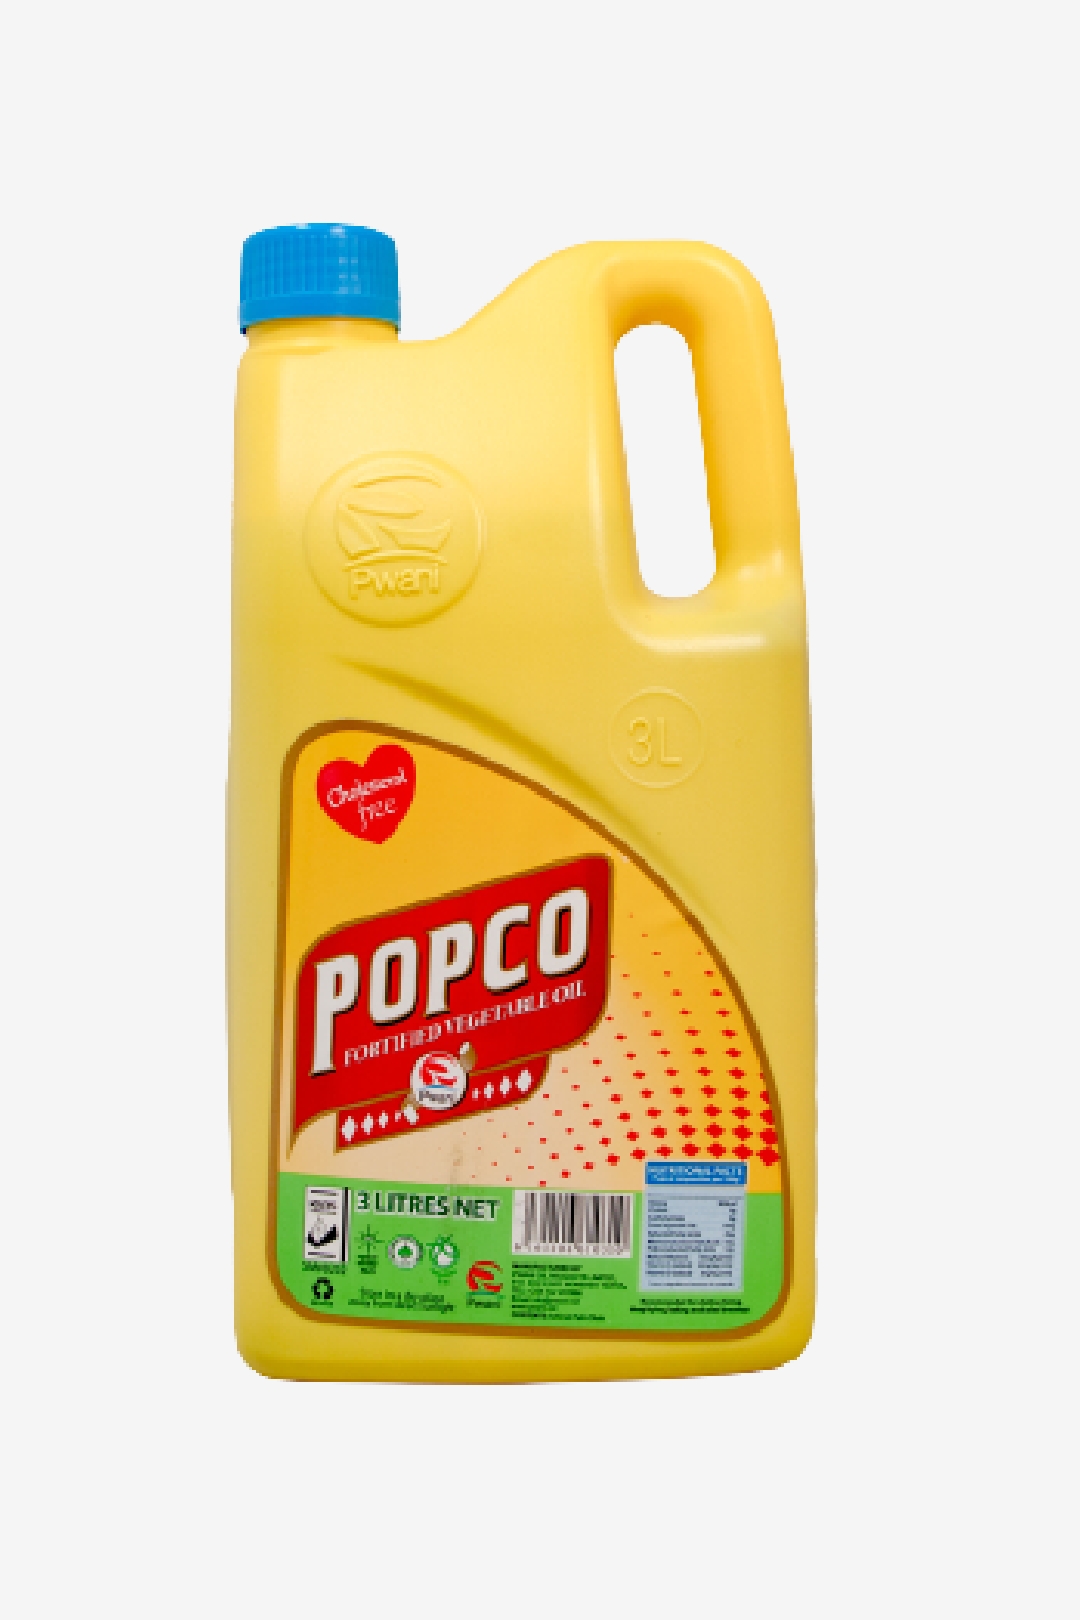 Popco – Pwani